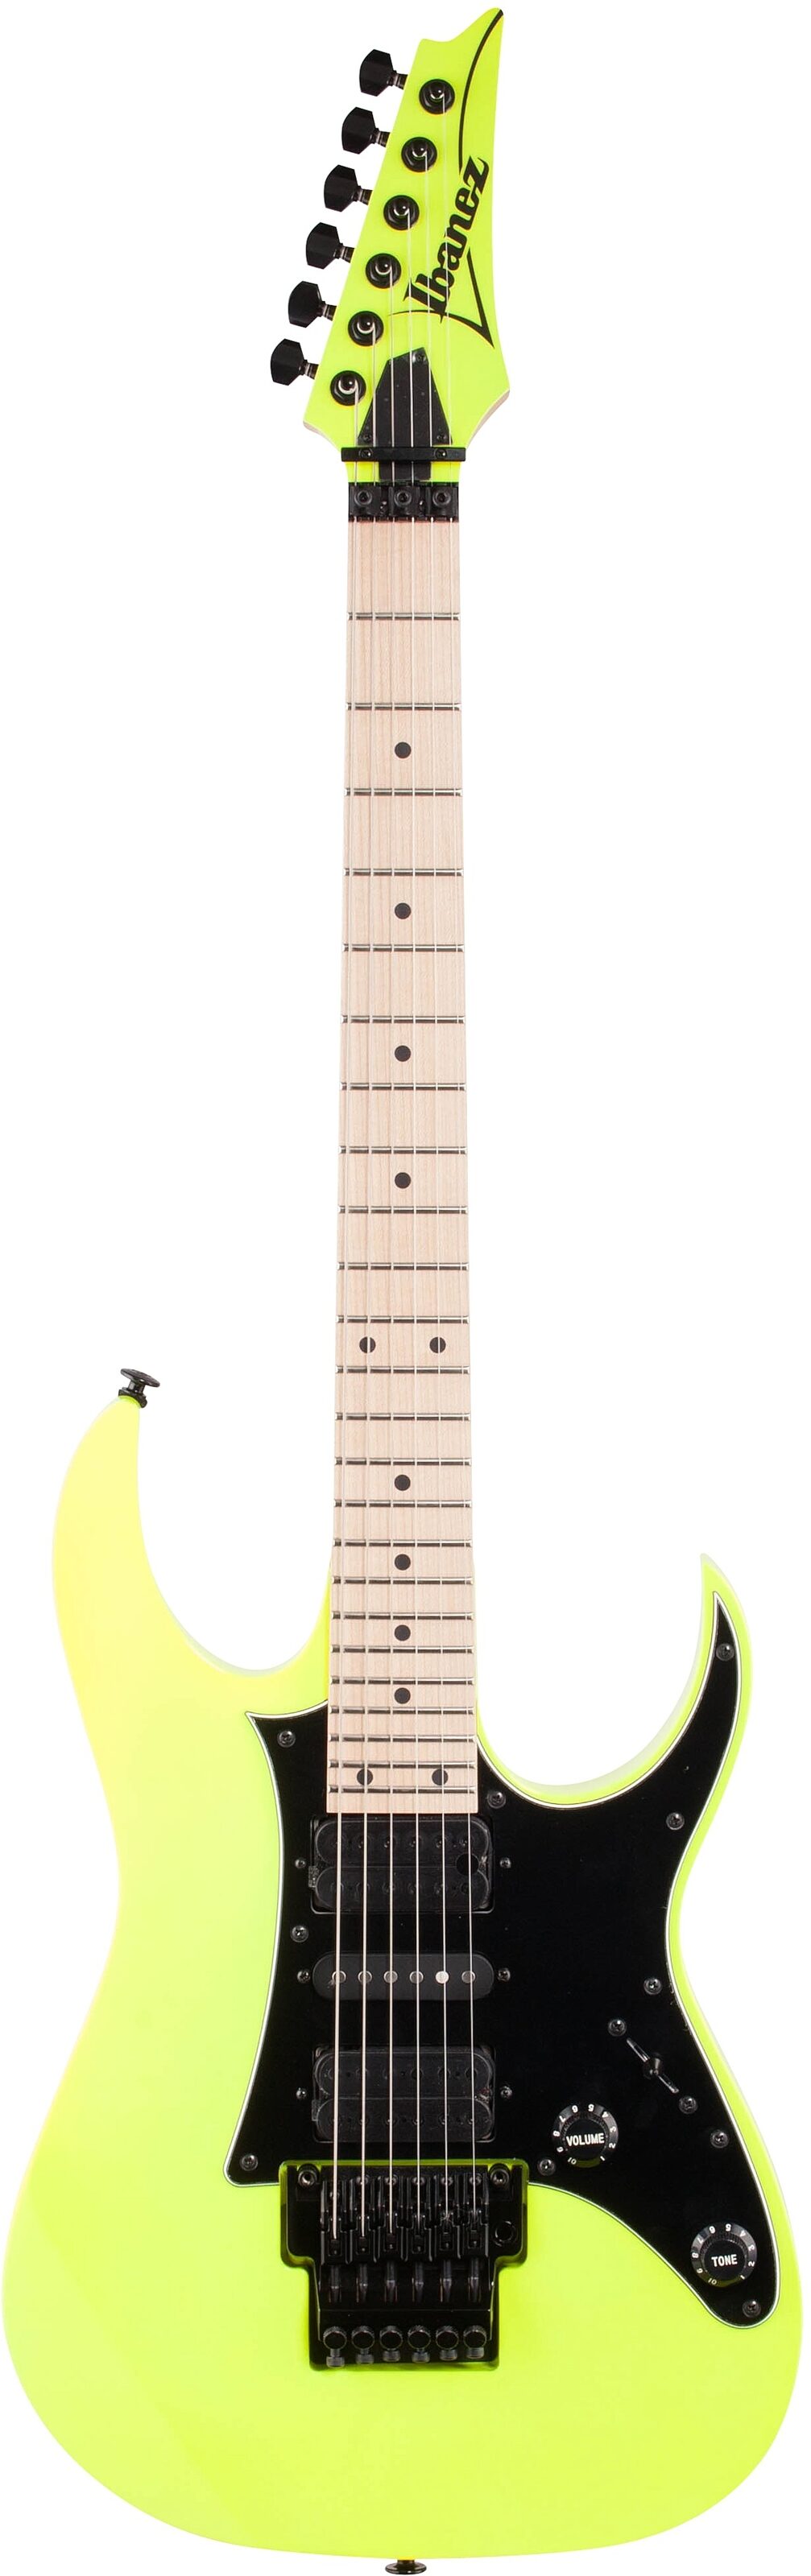 Ibanez RG550 Genesis Electric Guitar, Desert Sun Yellow